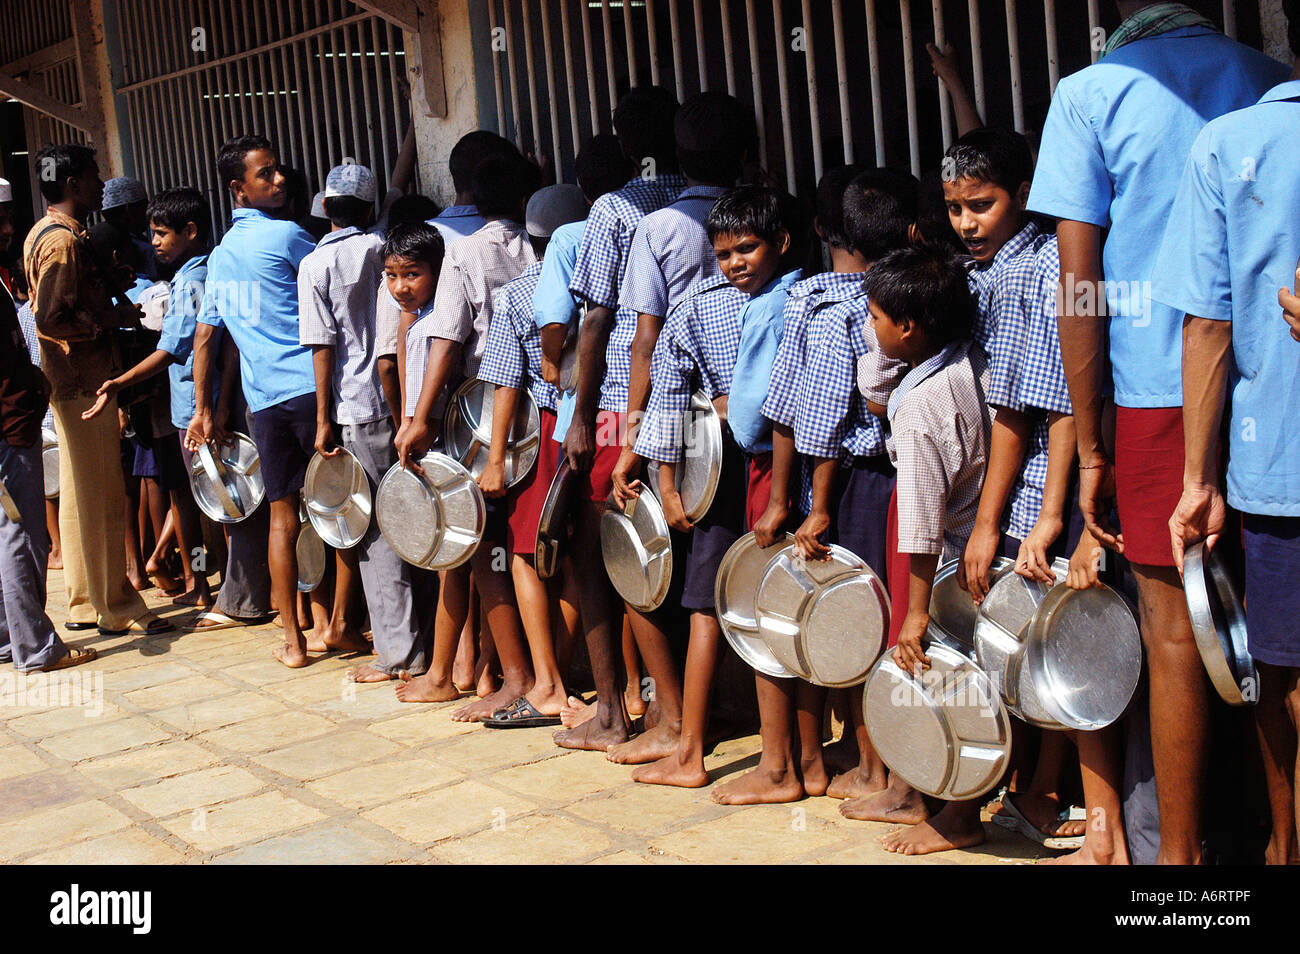 ASB77324 Kinder stehen in Warteschlange für freie Mahlzeiten, Indien Stockfoto